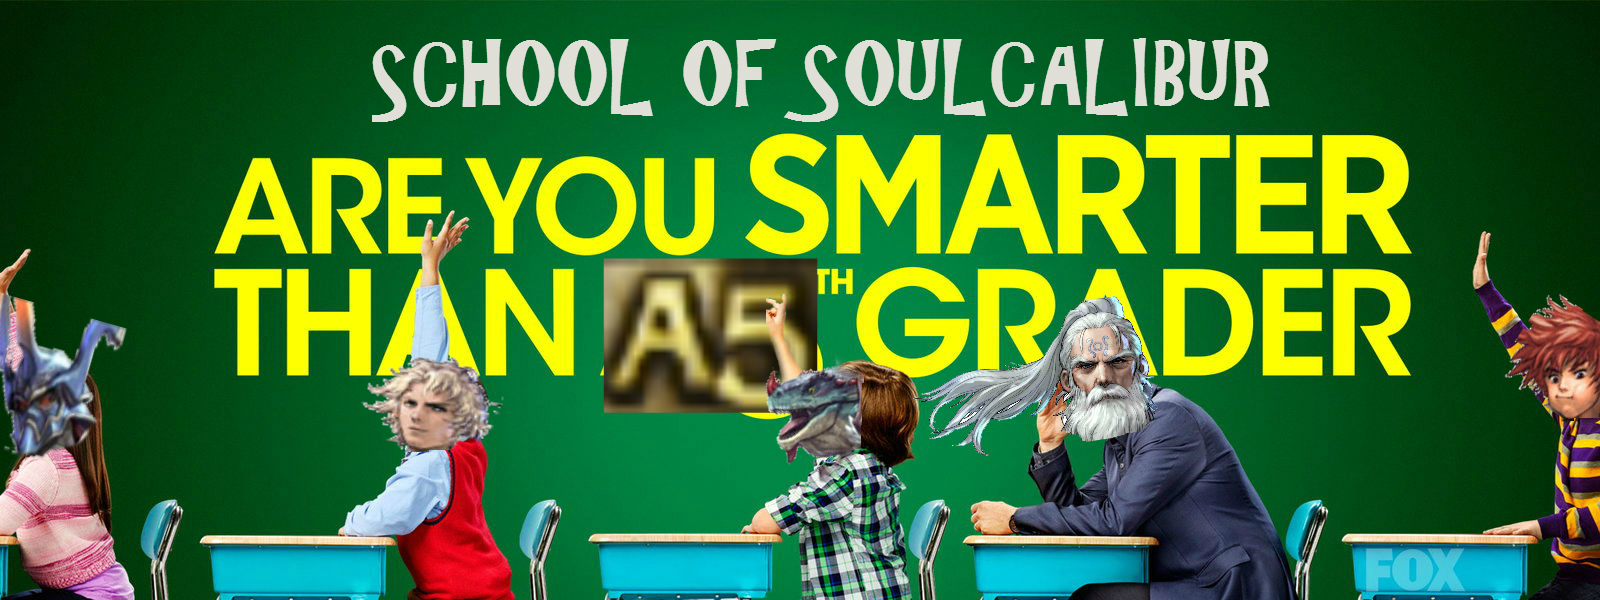 Schoolcalibur.jpg